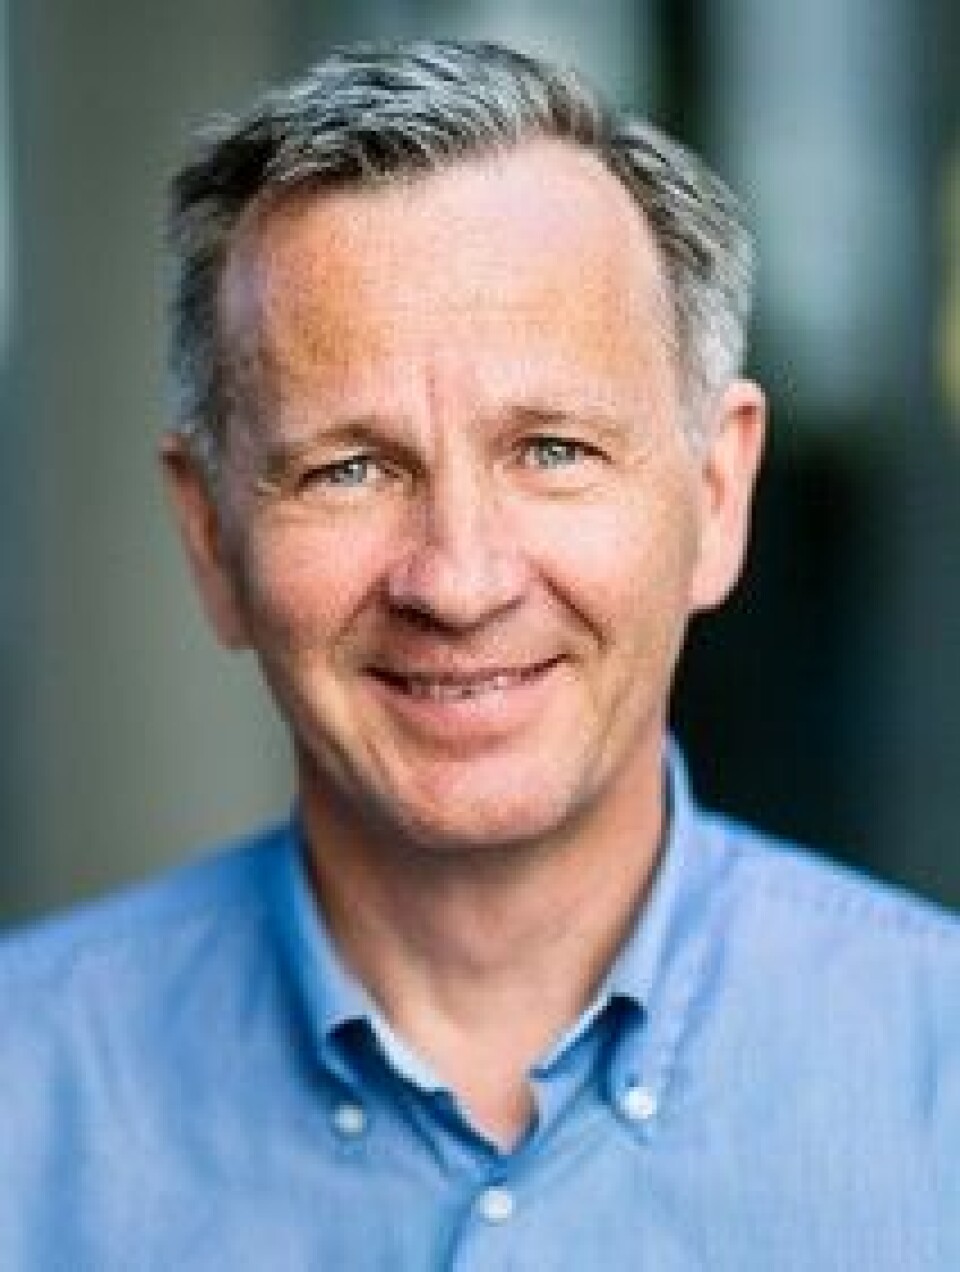 Ole Kristian Hjelstuen er administrerende direktør i Inven2. De hjelper norske sykehus med å forhandle avtaler med legemiddelfirmaer som vil teste ut medisiner. (Rettigheter: Ole Kristian Hjelstuen)